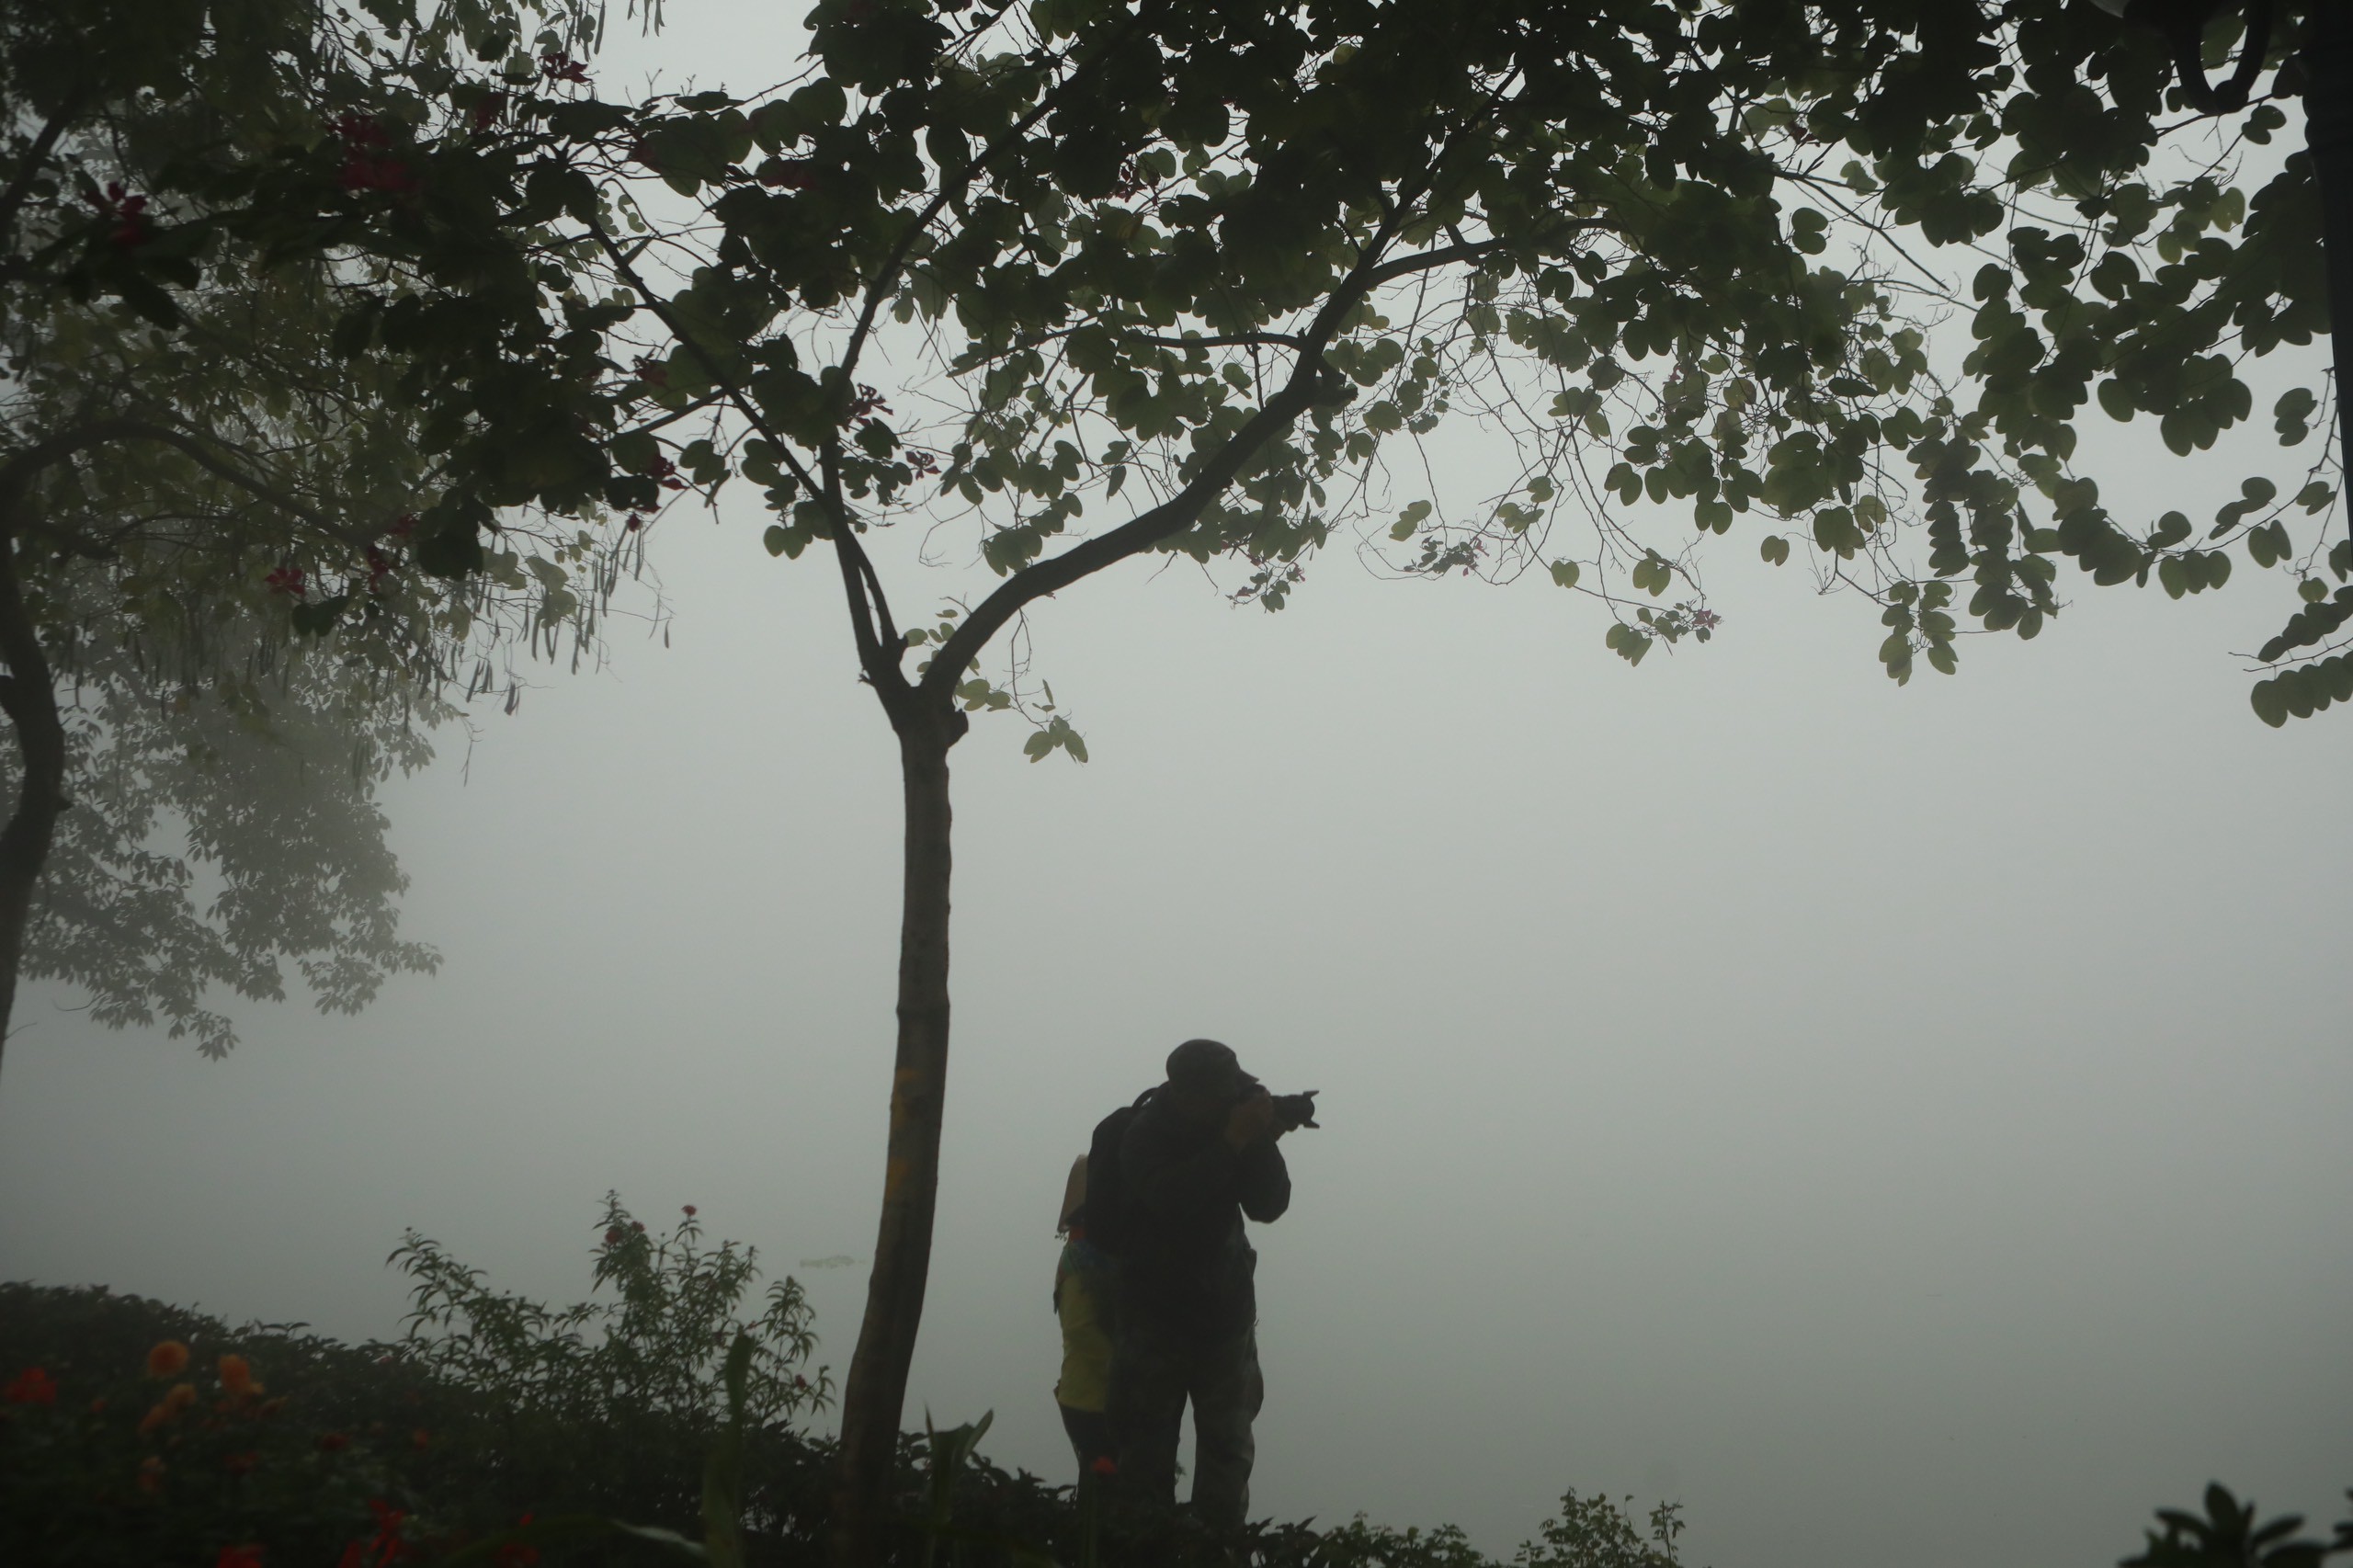 Sáng nay (2/2), Hà Nội được bao phủ trong màn sương mù dày đặc, nhiều người tranh thủ đến Hồ Gươm để 